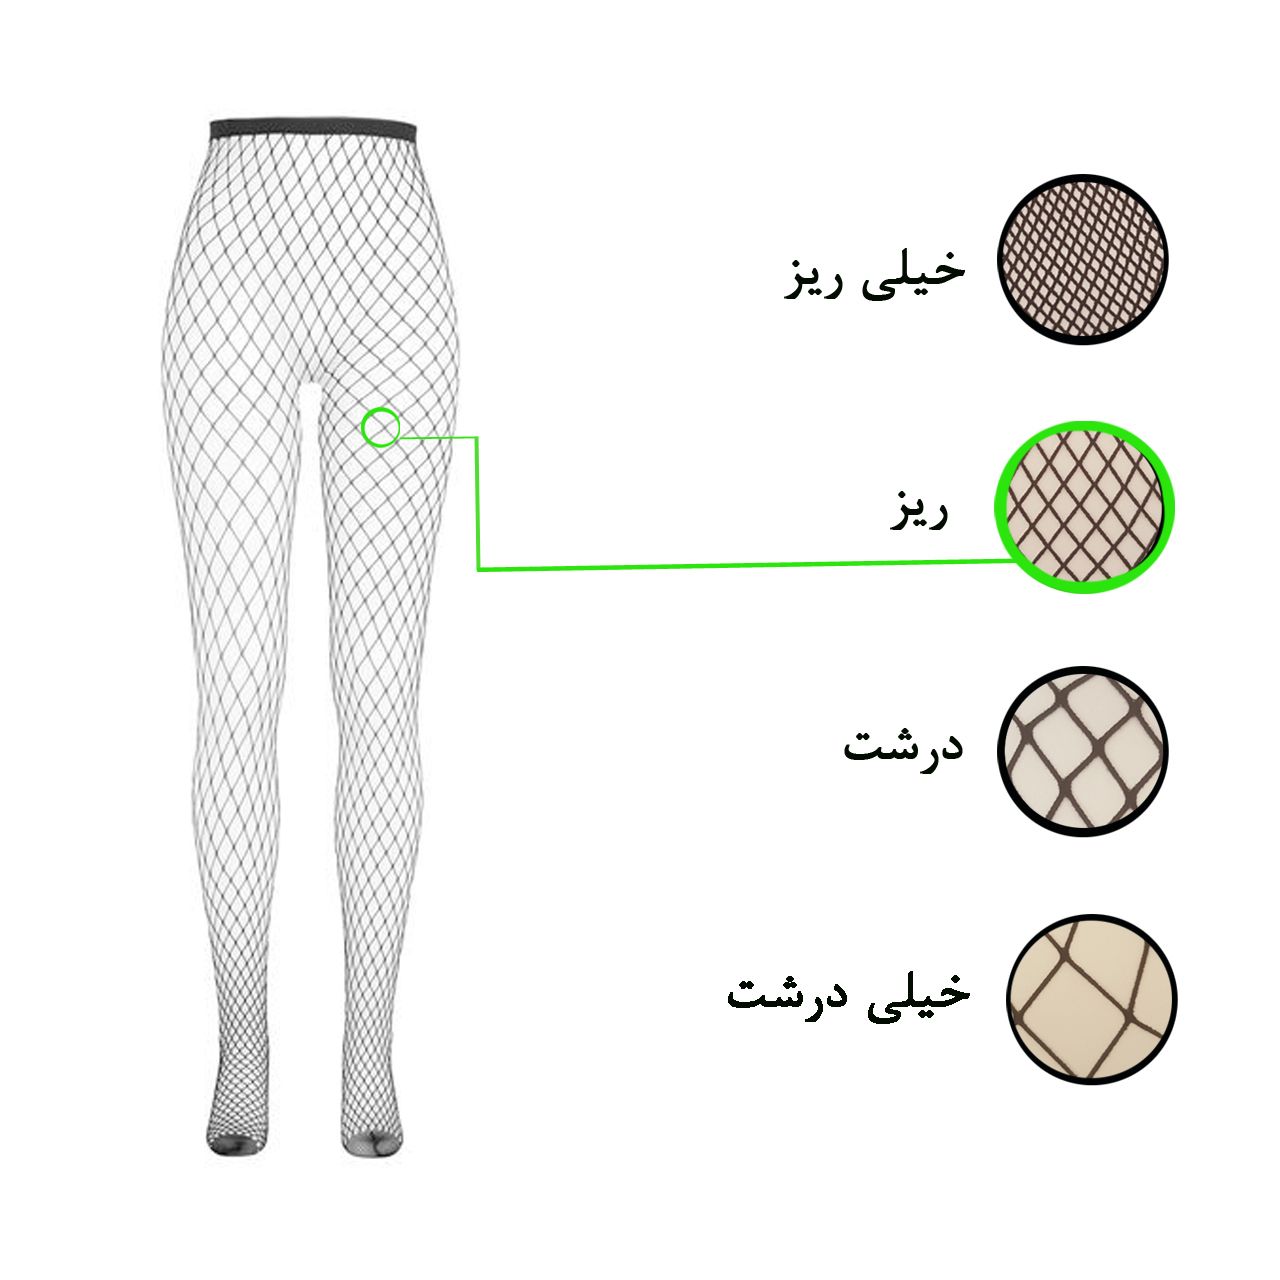 جوراب شلواری زنانه ال سون کد PH429 -  - 5